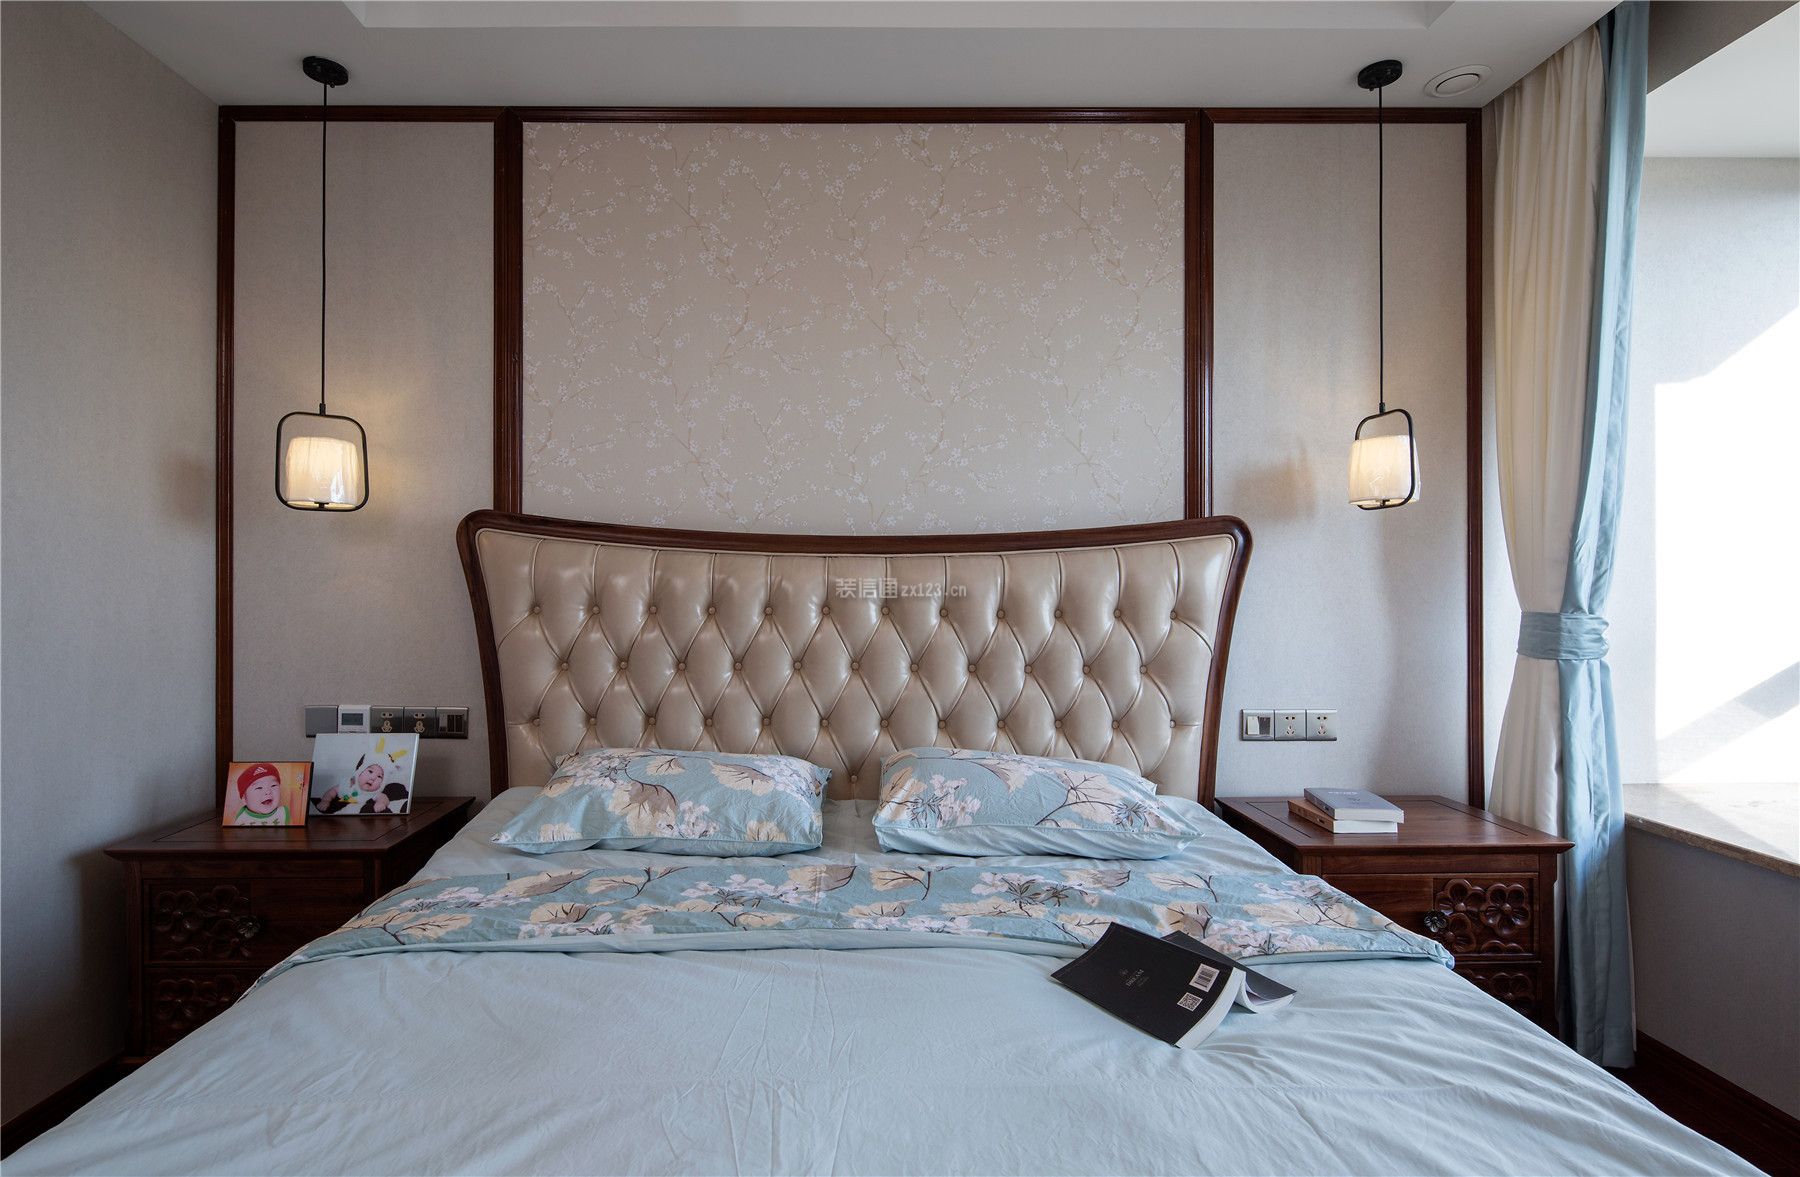 北京方圆合景南沙水恋混搭风格142平米设计方案 卧室床头造型效果图_装信通网